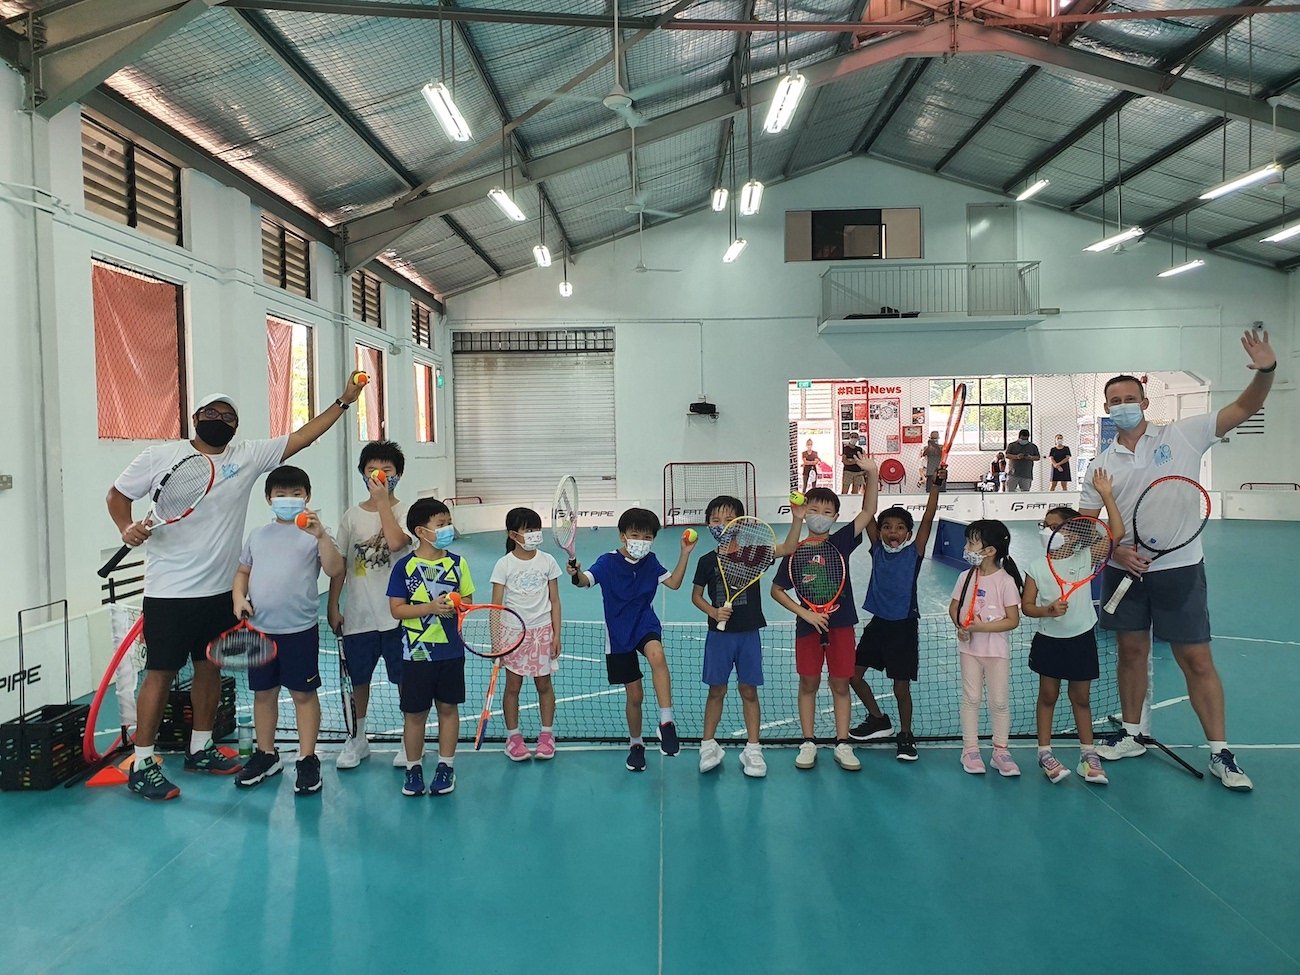 Kids-Tennis-Camp-Indoors.jpg